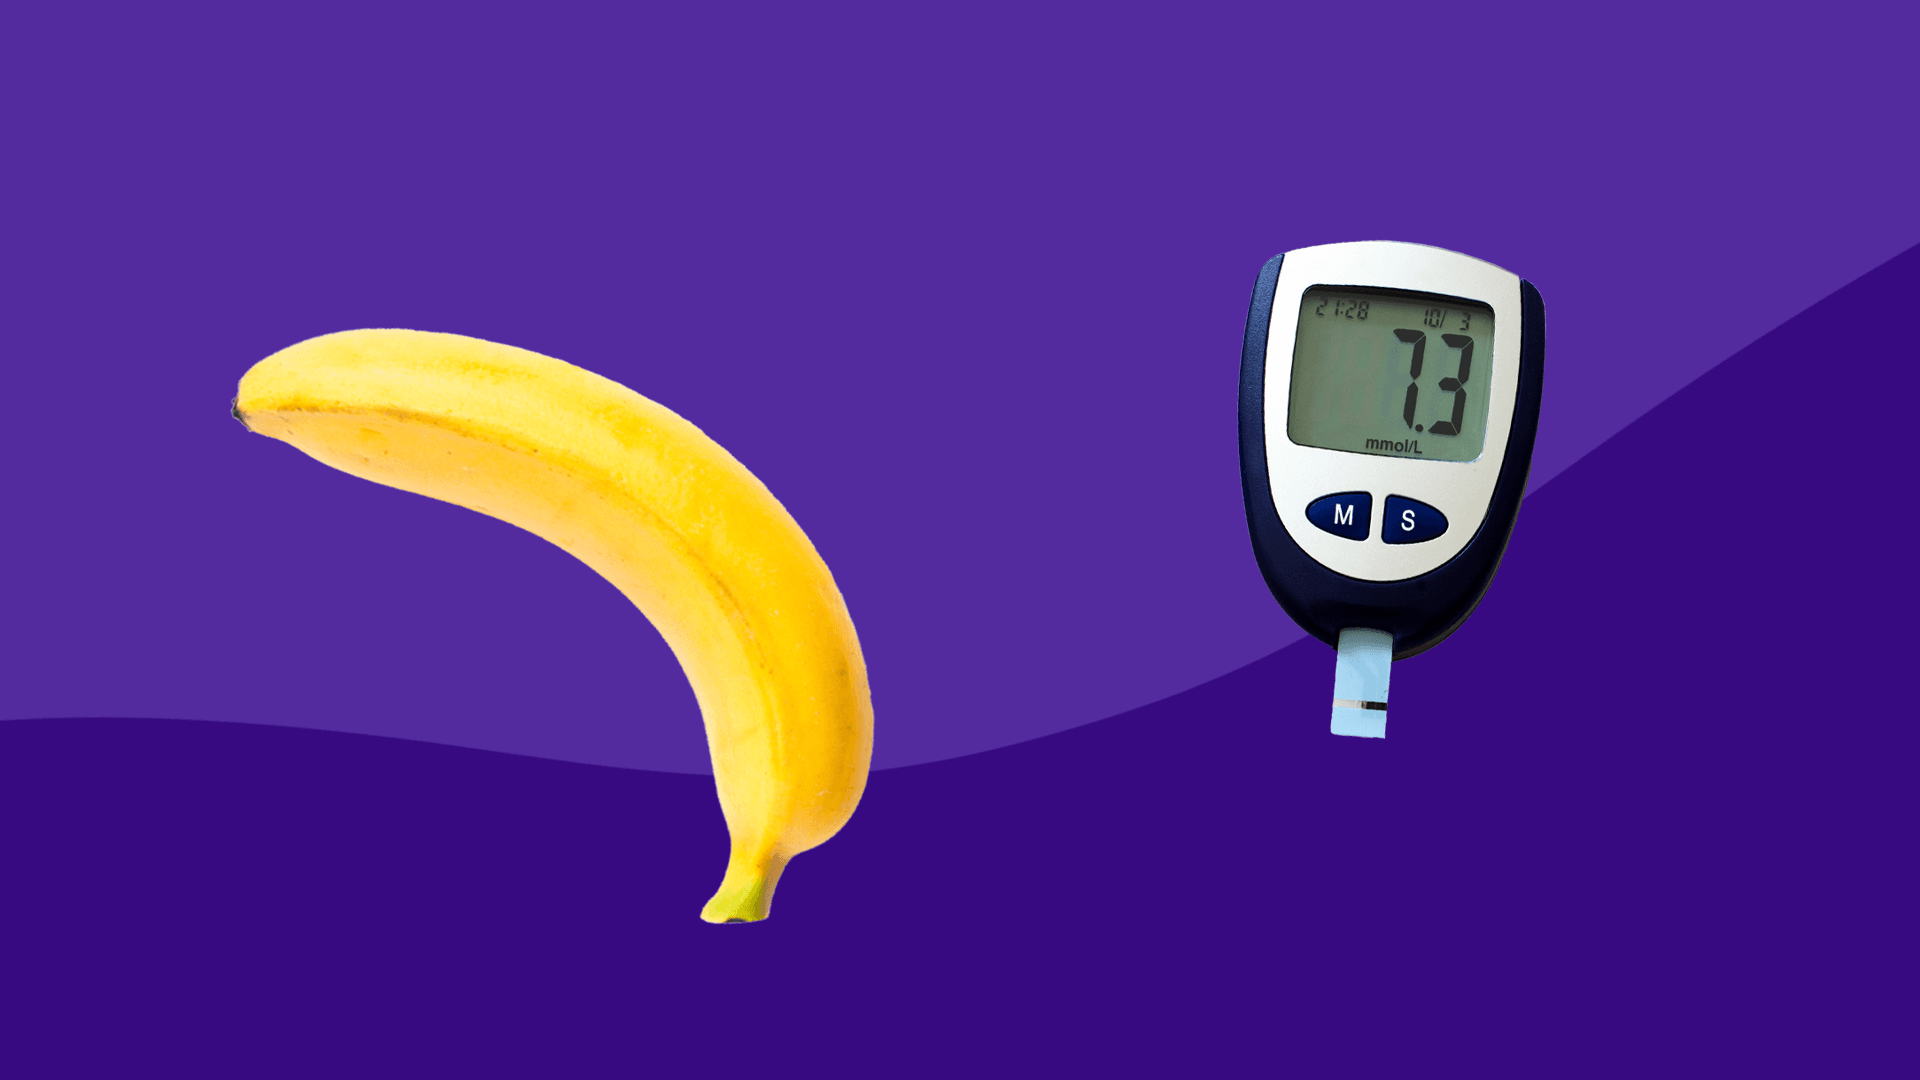 A banana represents erectile dysfunction and diabetes